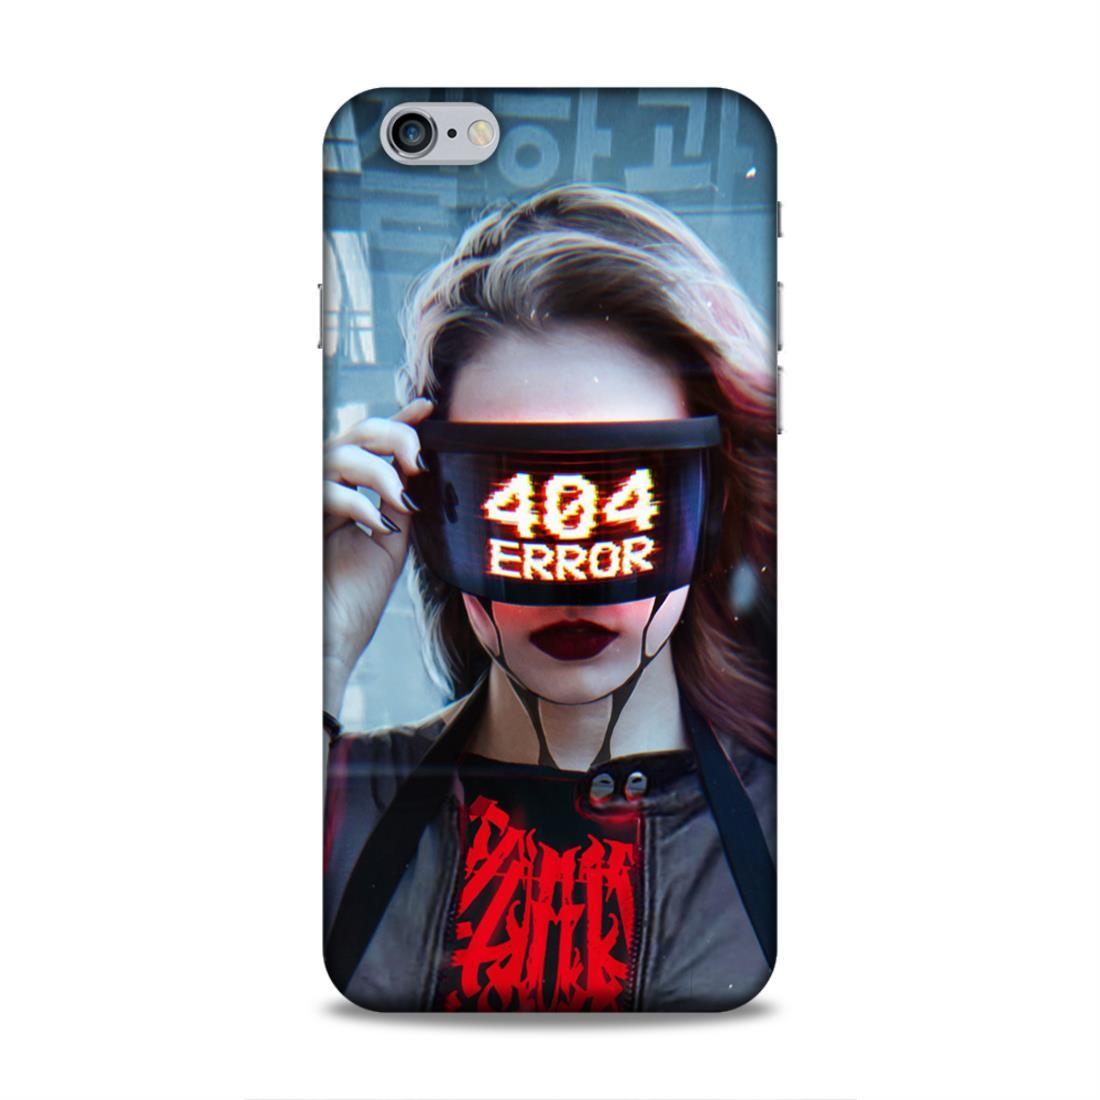 404 Error iPhone 6 Plus Phone Cover